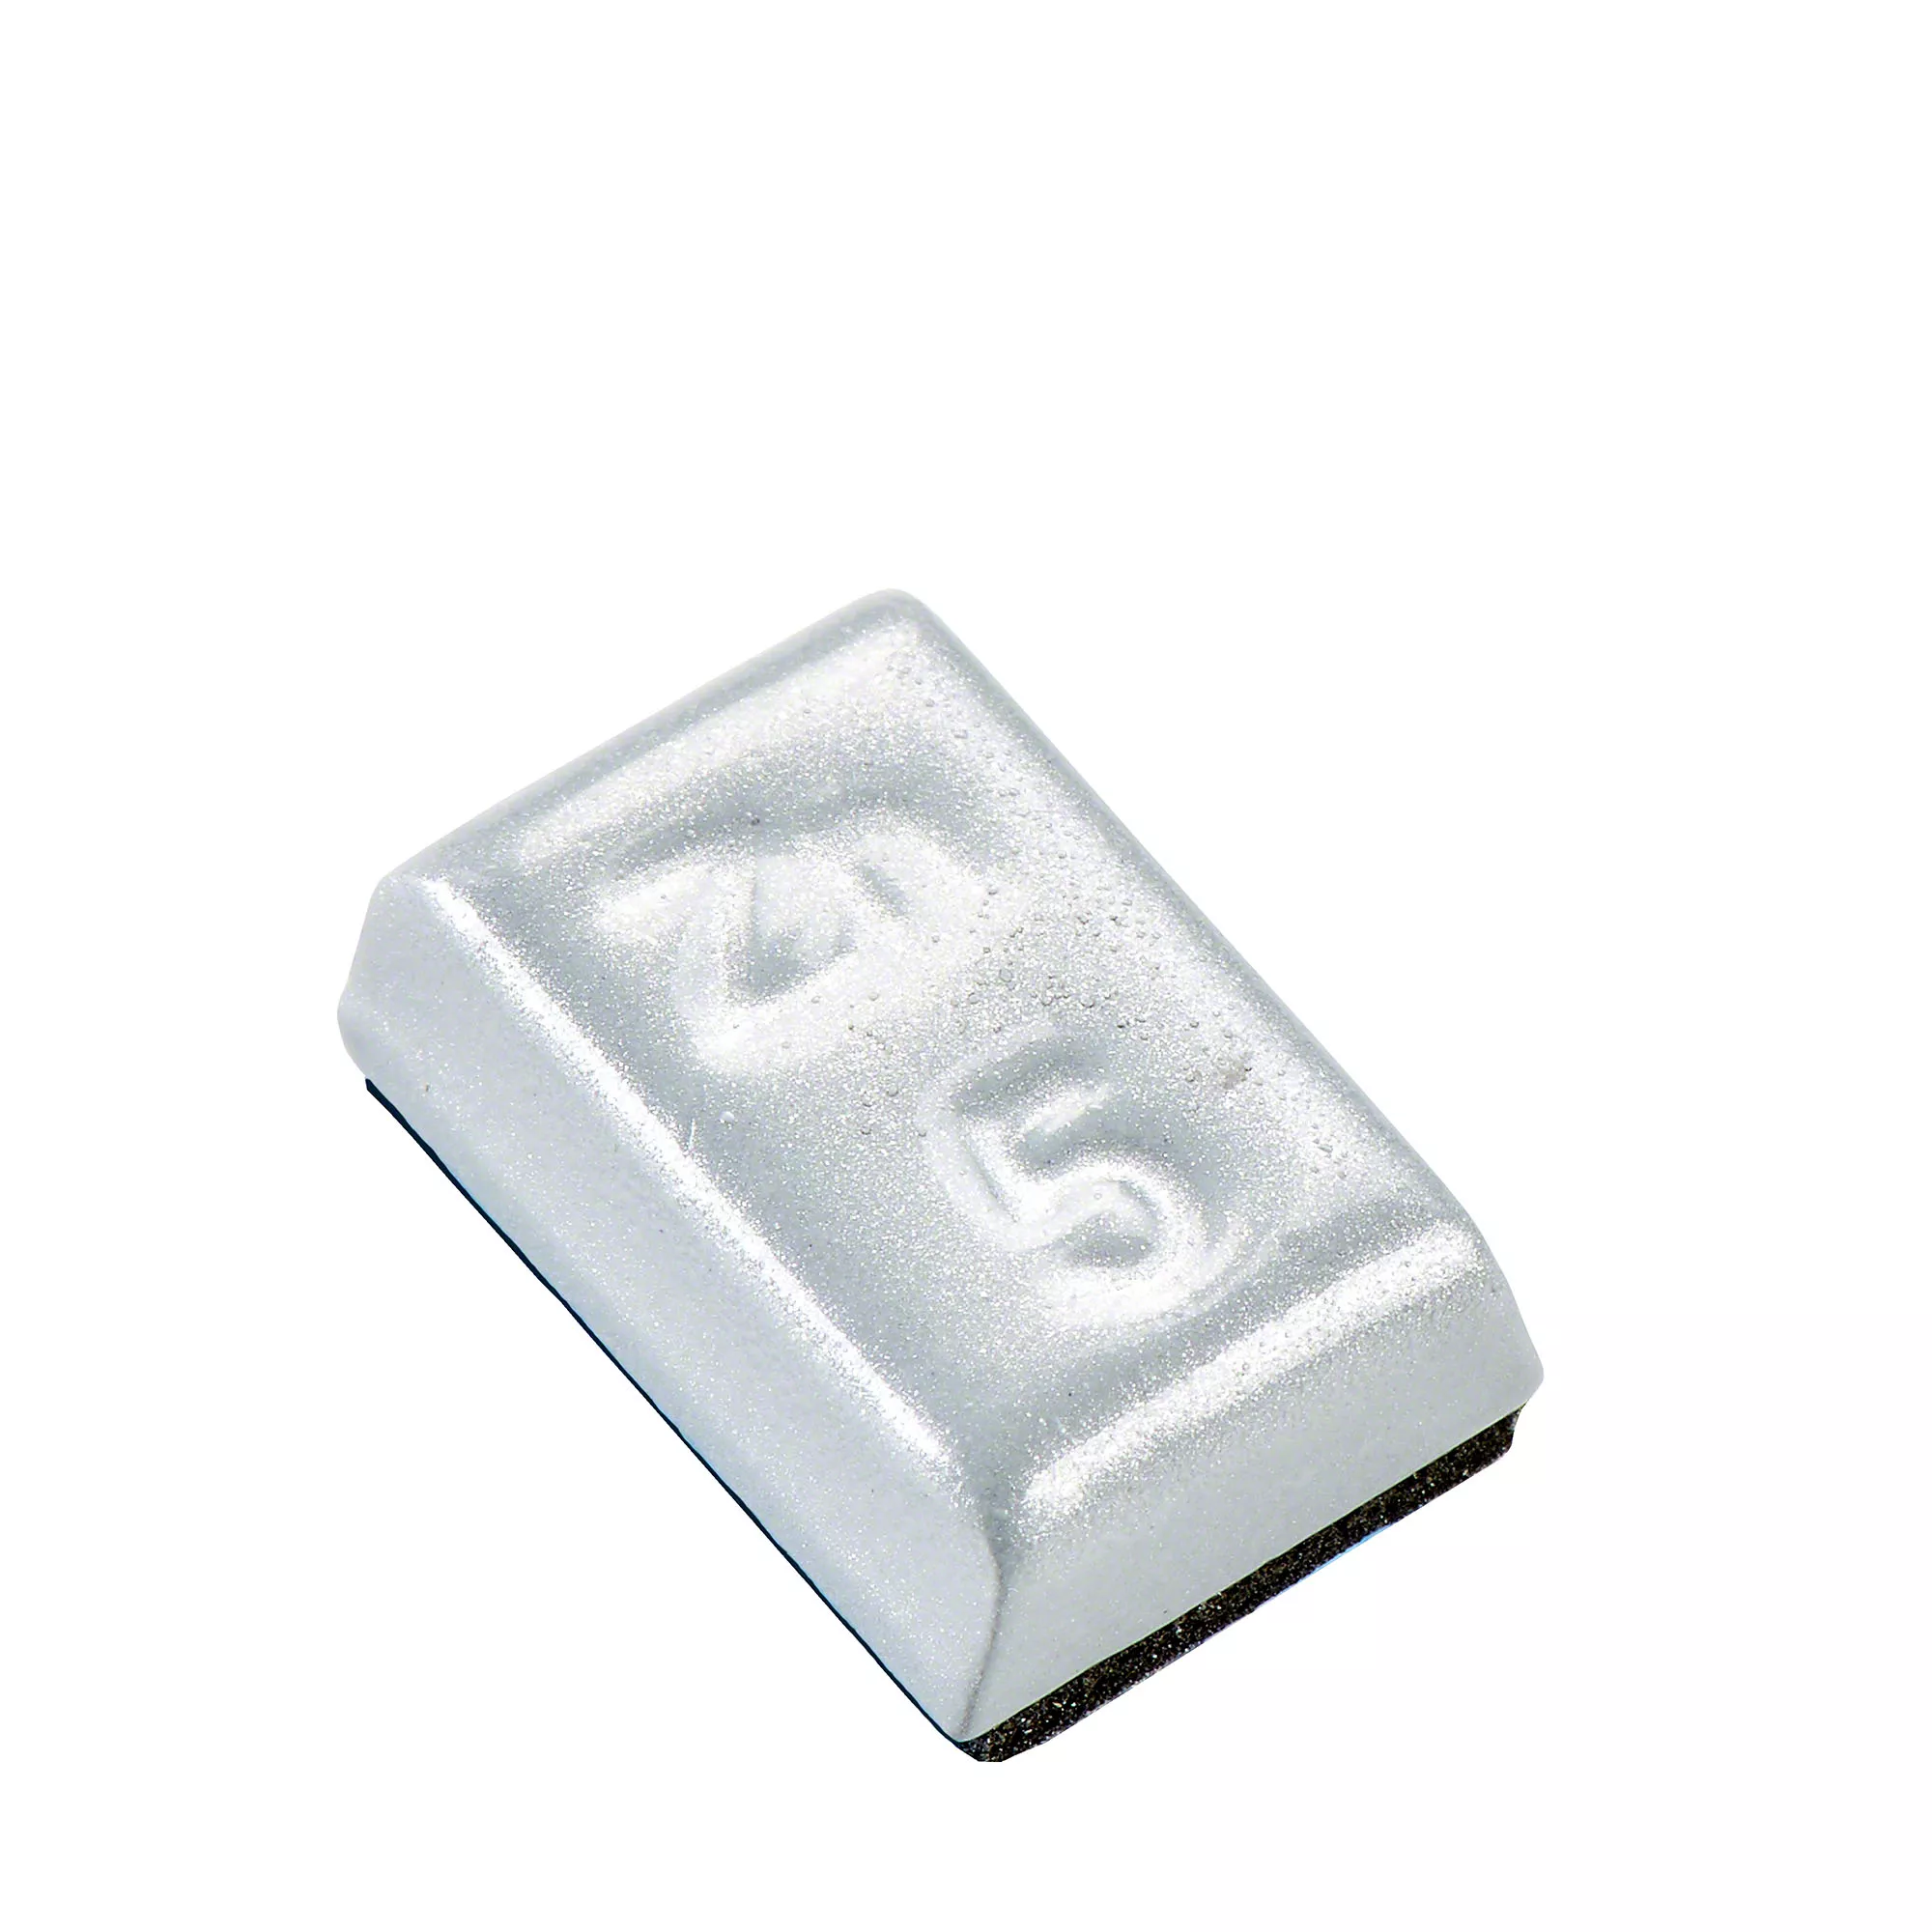 Klebegewicht - Typ 799, 5 g, Zink, Silber